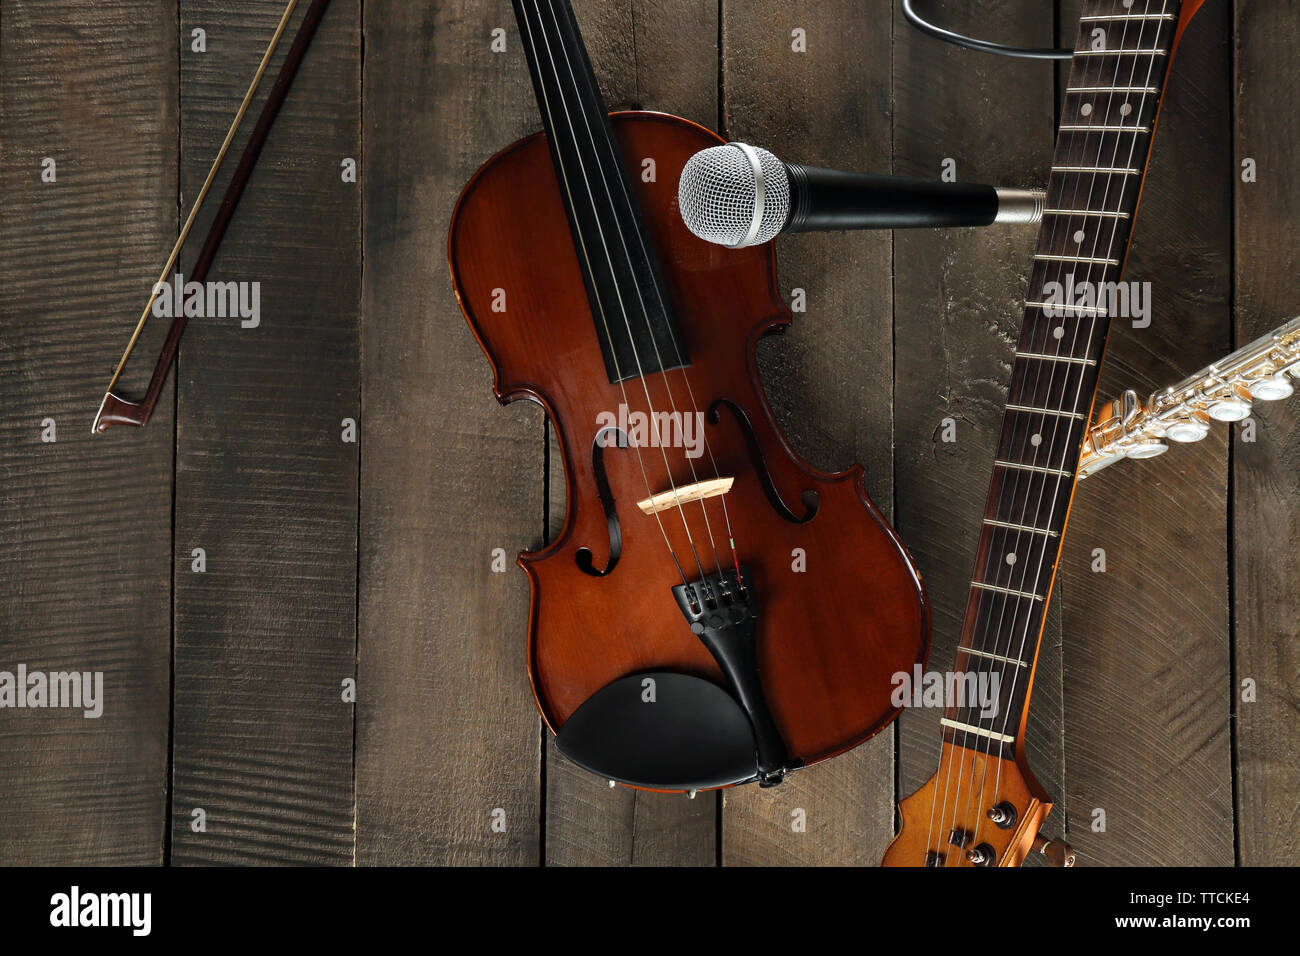 E-Gitarre, Geige, Flöte und Mikrofon auf Holz- Hintergrund Stockfotografie  - Alamy